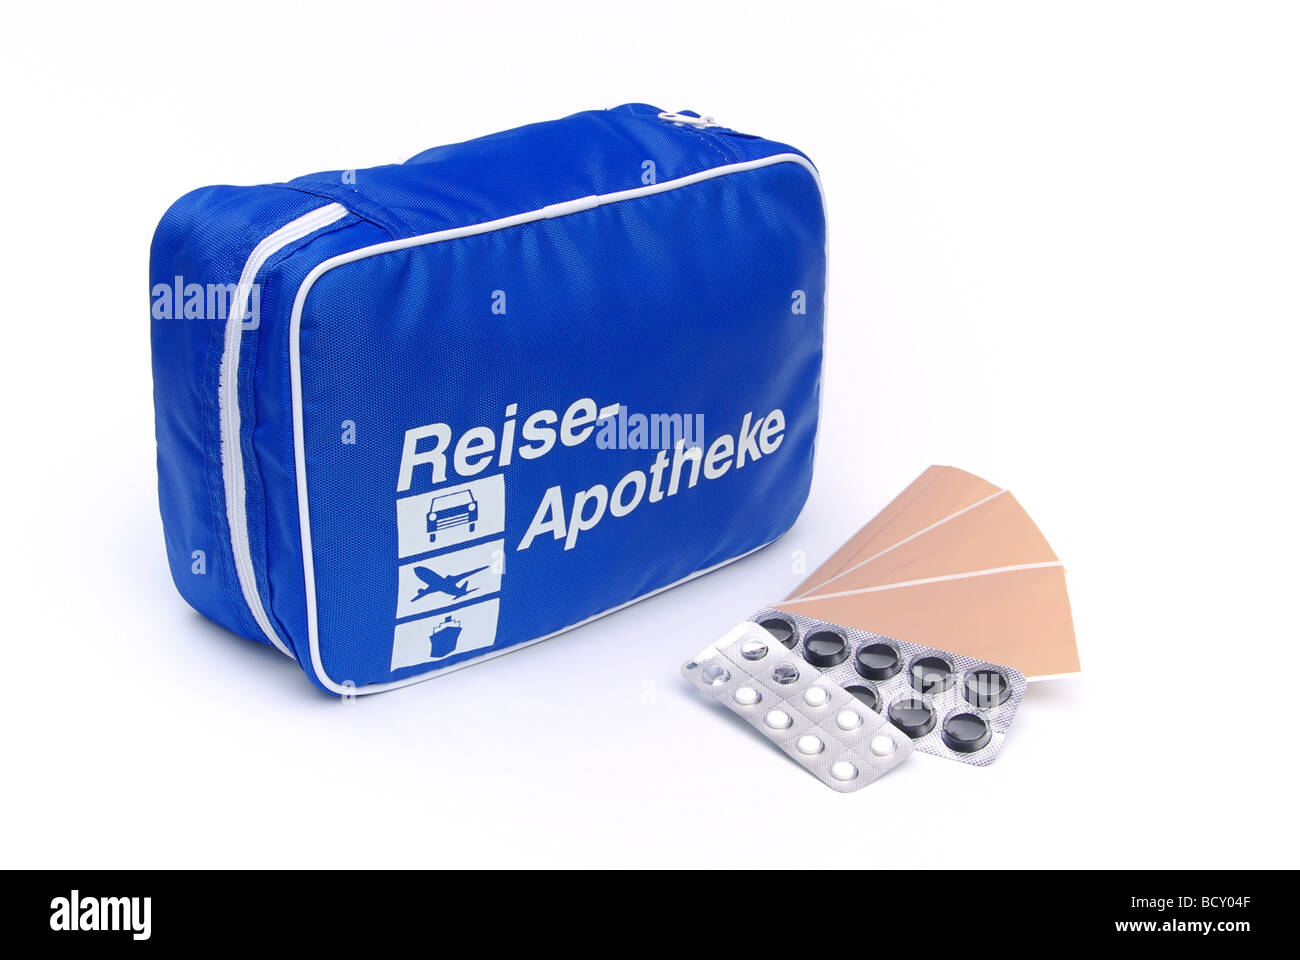 Reiseapotheke first aid travel kit 04 Stock Photo